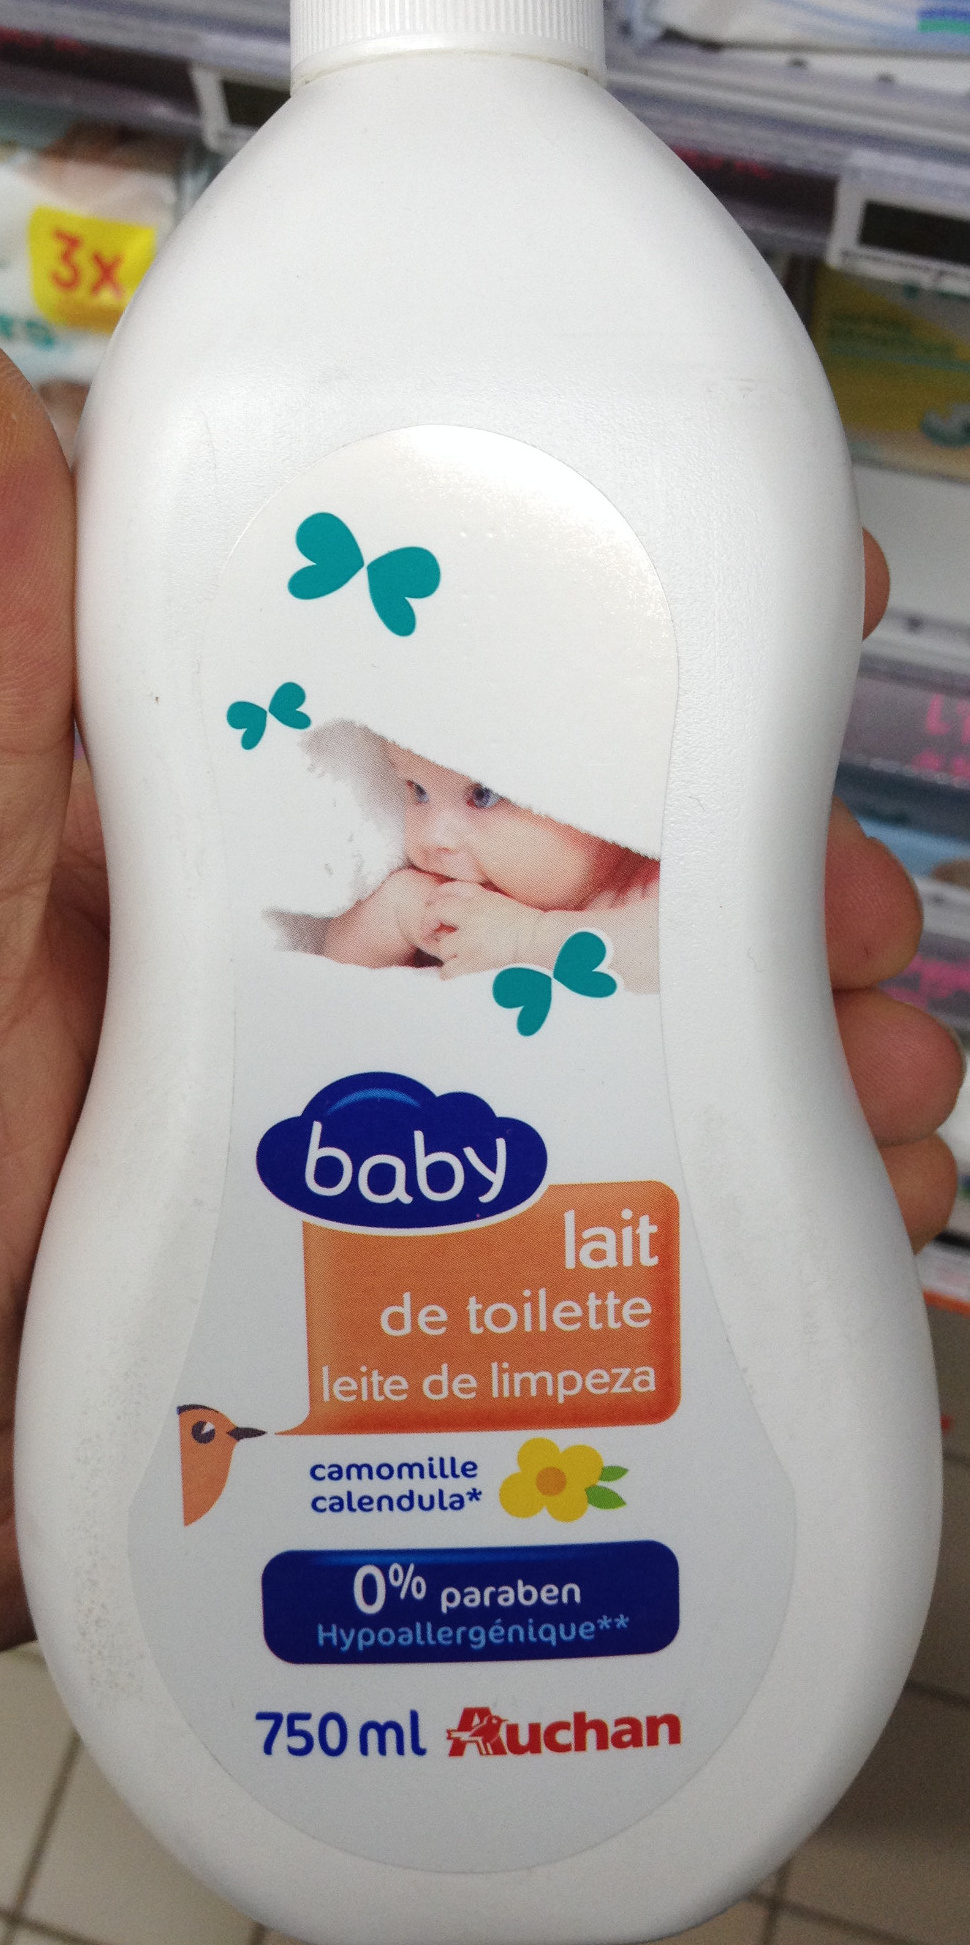 Lait de toilette baby camomille - Продукт - fr